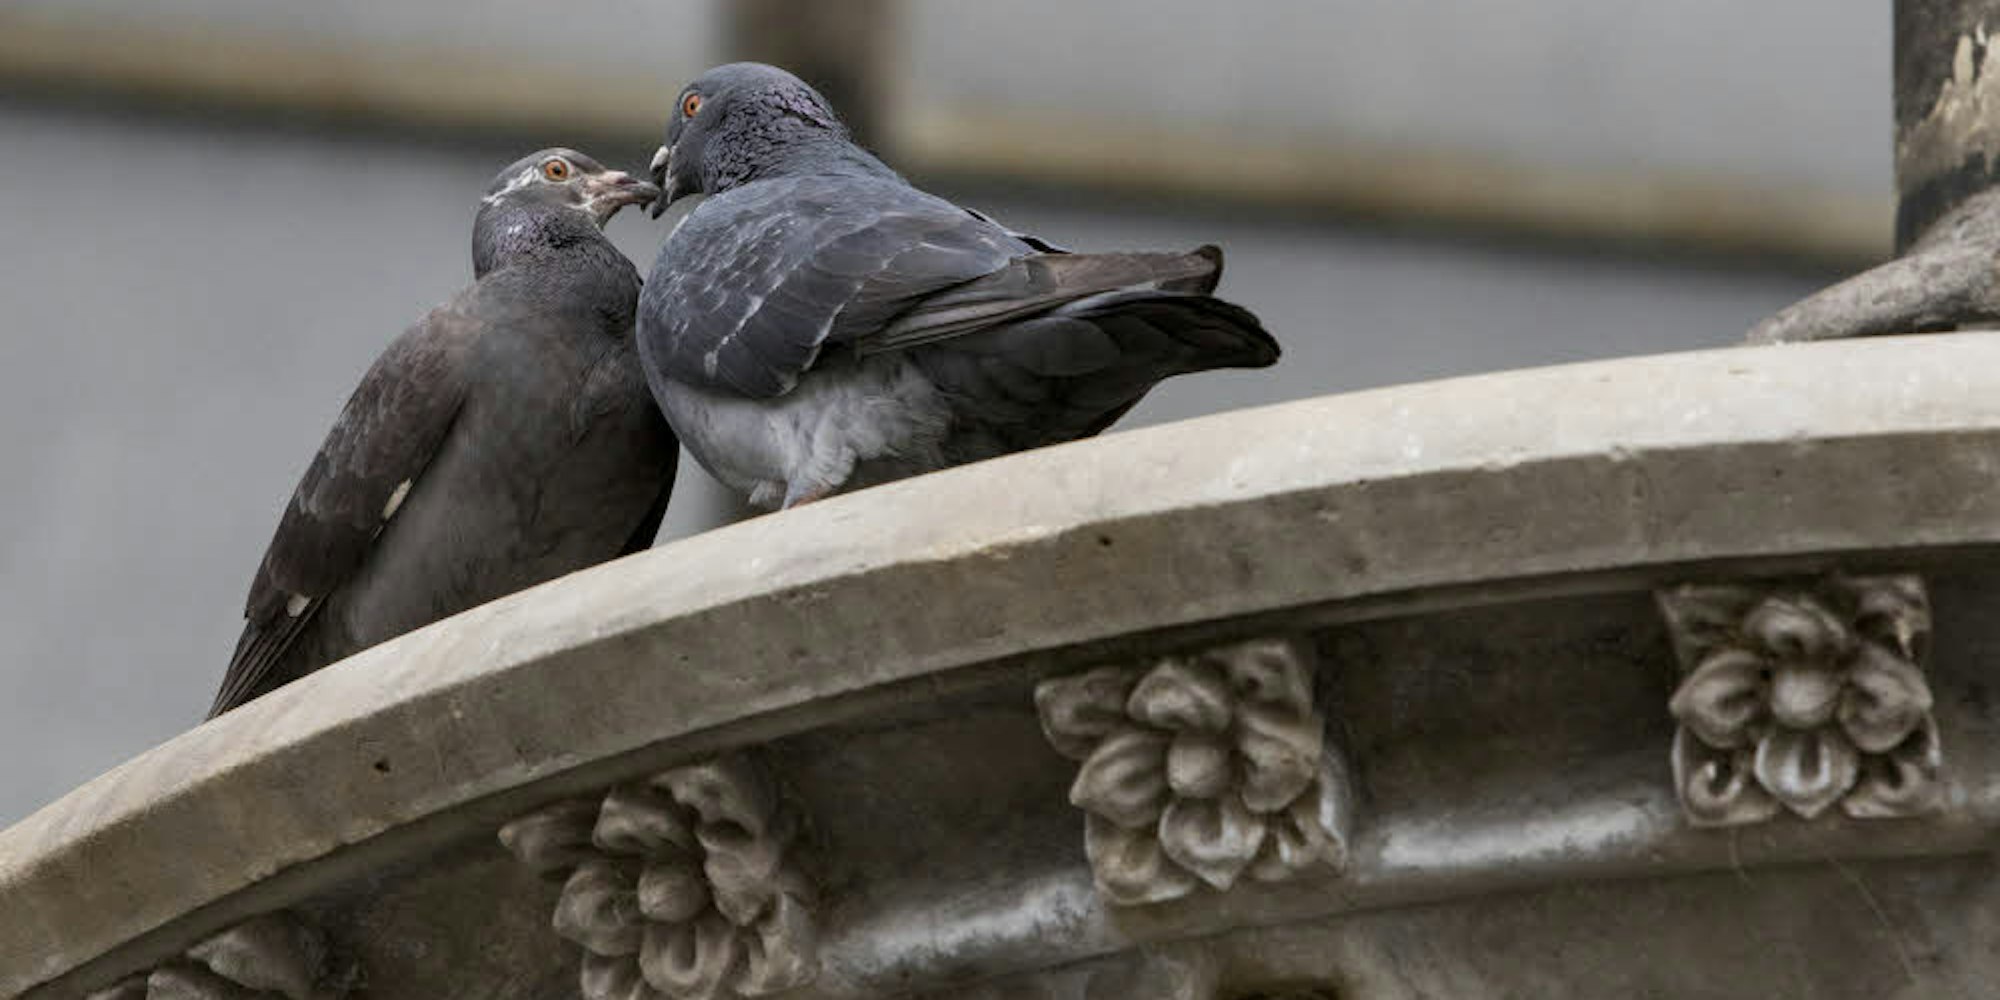 Taubenpaare verbringen viel Zeit miteinander.